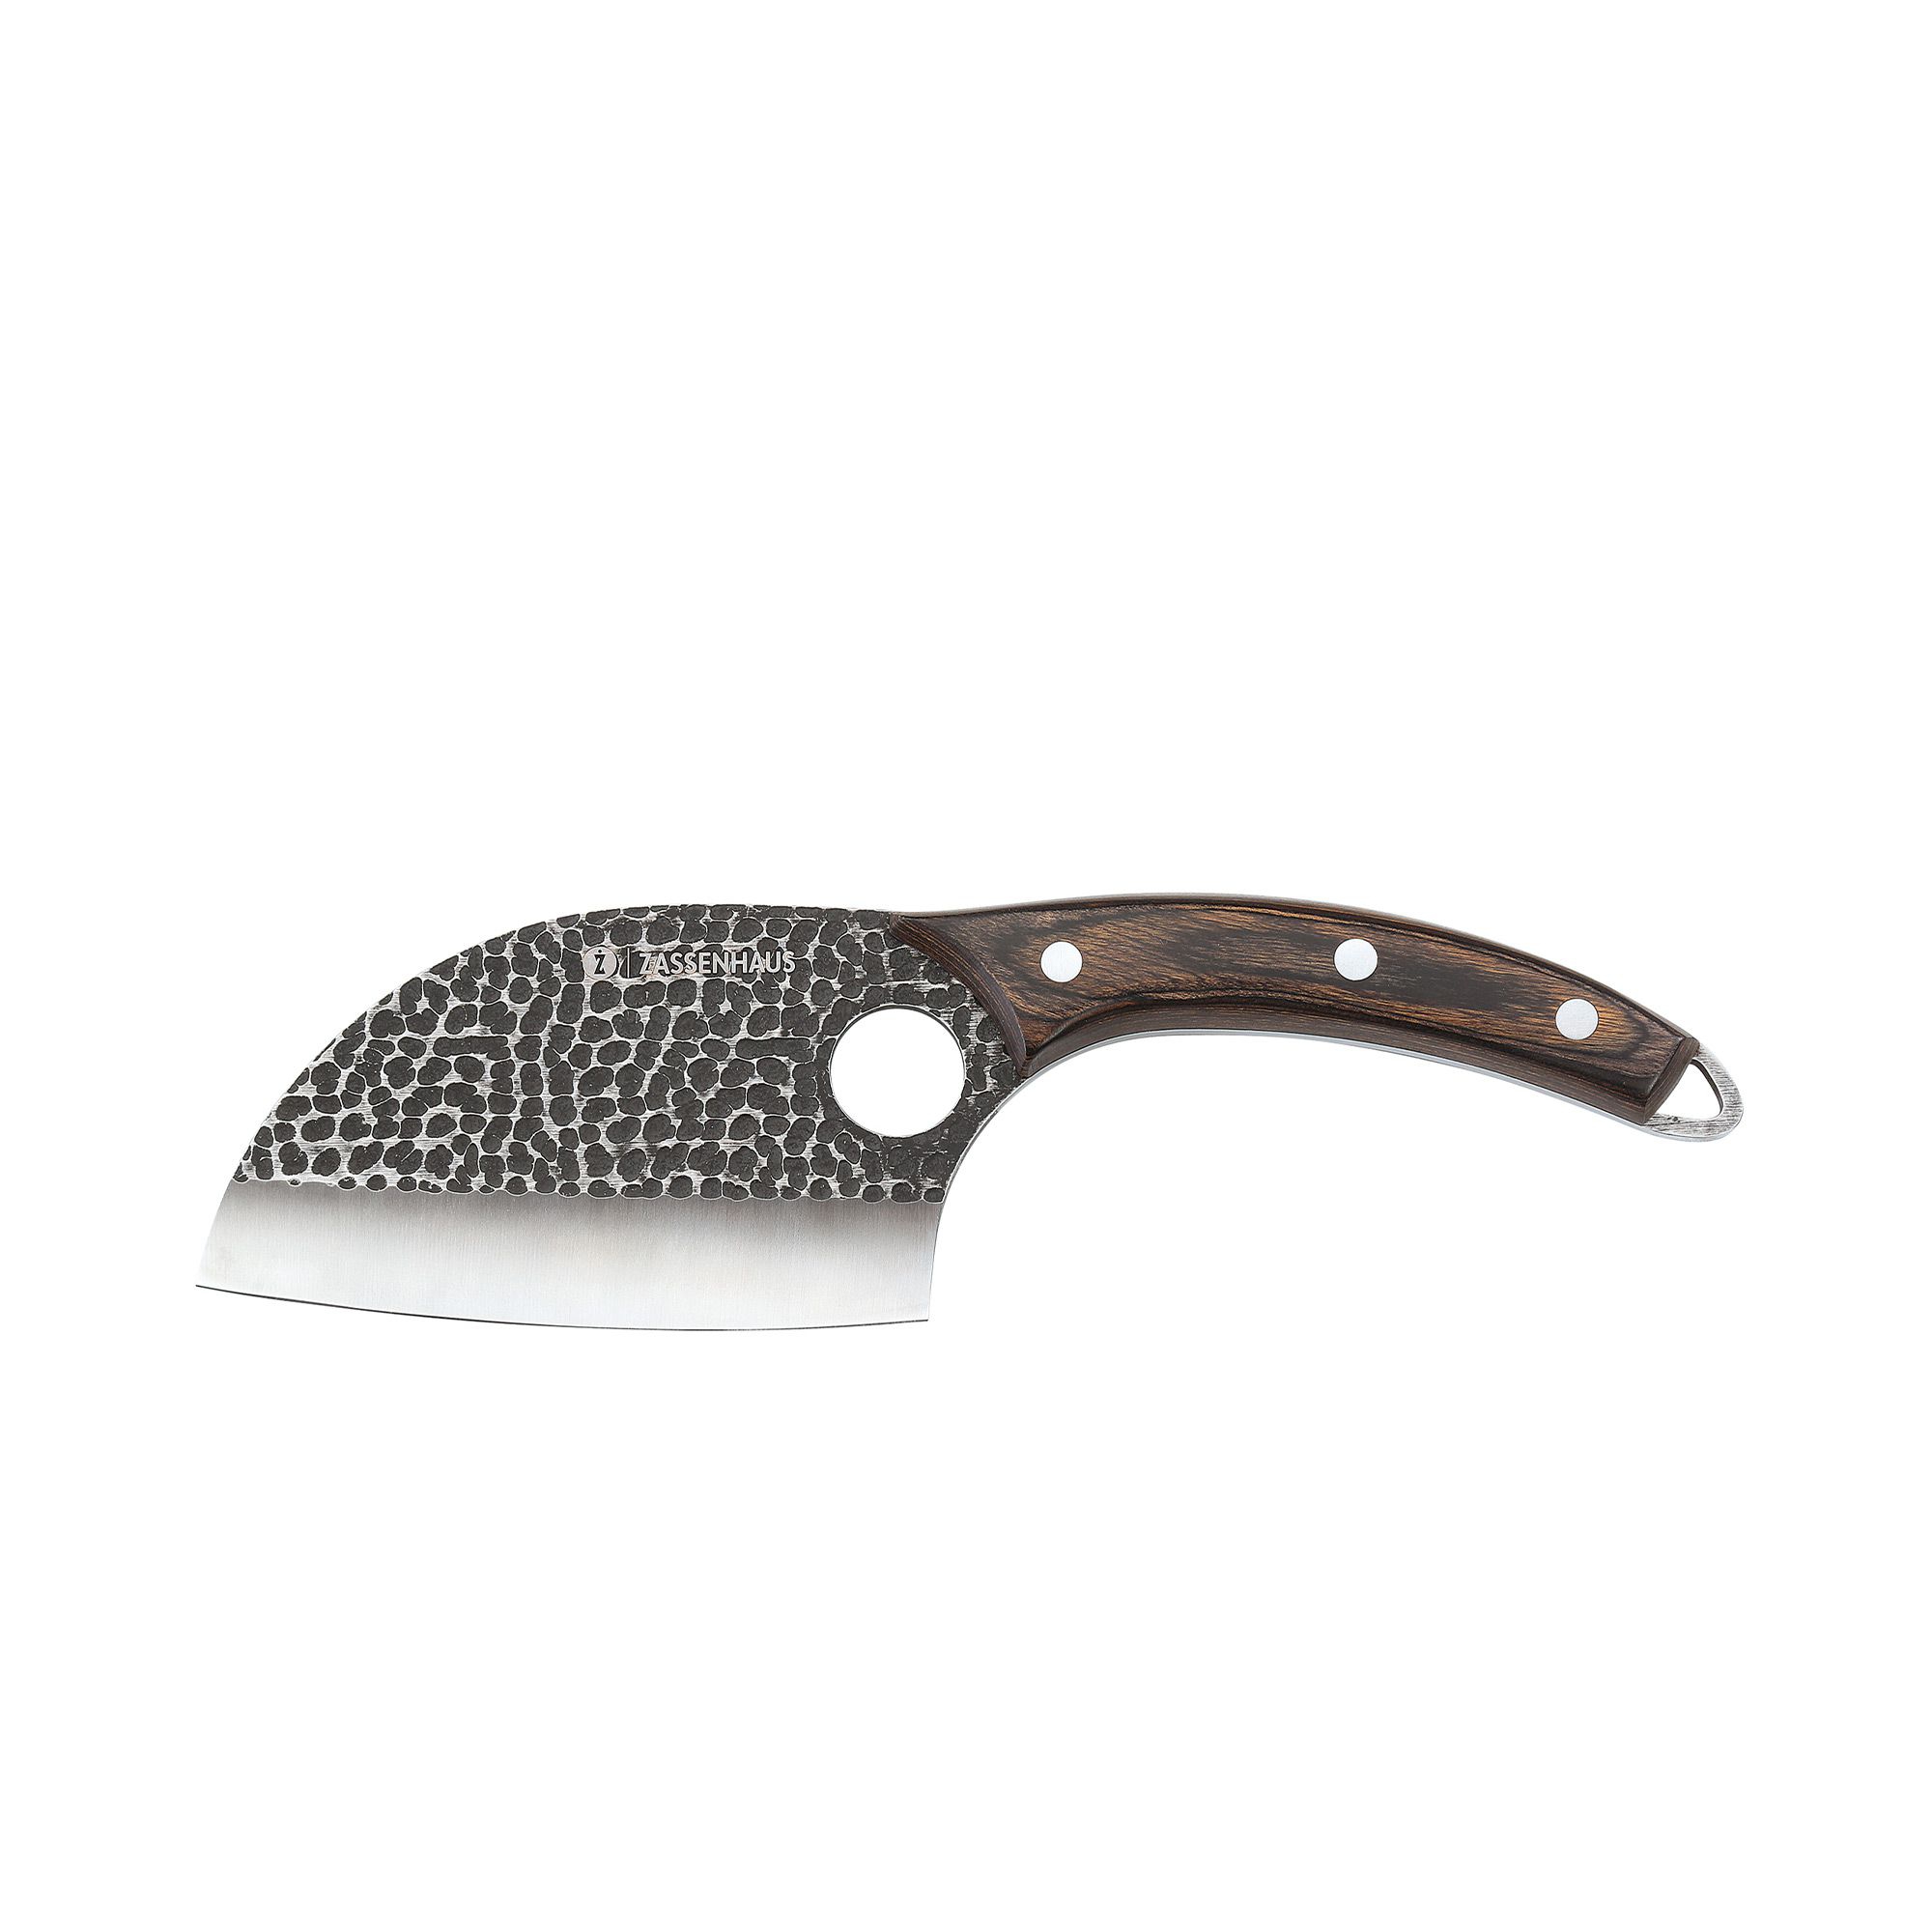 Zassenhaus - Knife KEEPER 12 cm